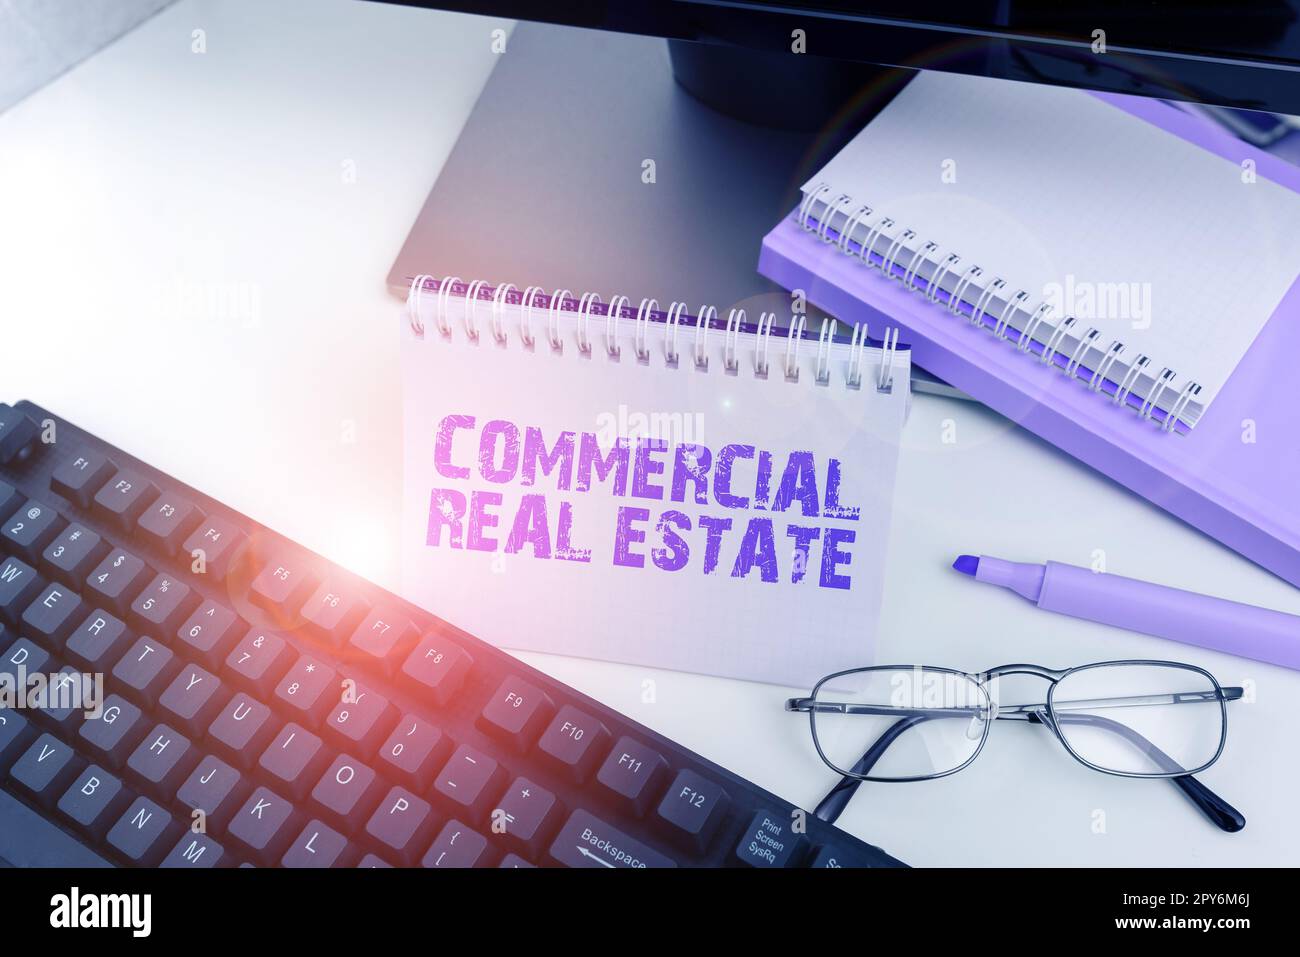 Affiche textuelle indiquant commercial Real Estate. Approche commerciale revenu immeuble ou terre à des fins commerciales Banque D'Images